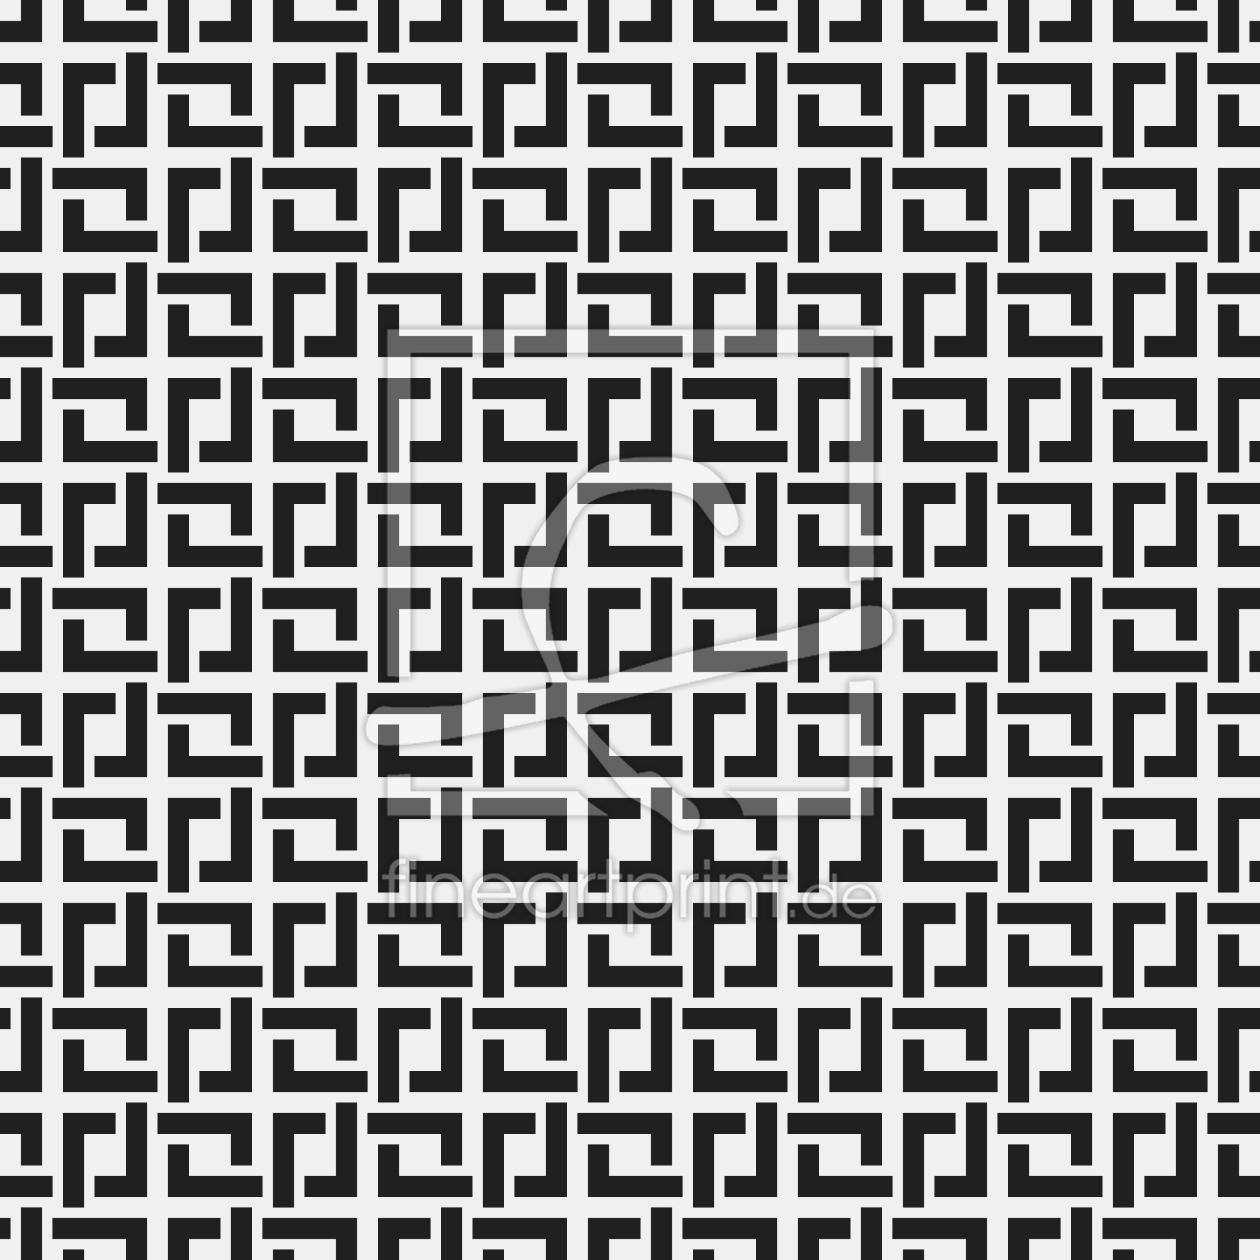 Bild-Nr.: 9012904 Quadratische Falten erstellt von patterndesigns-com